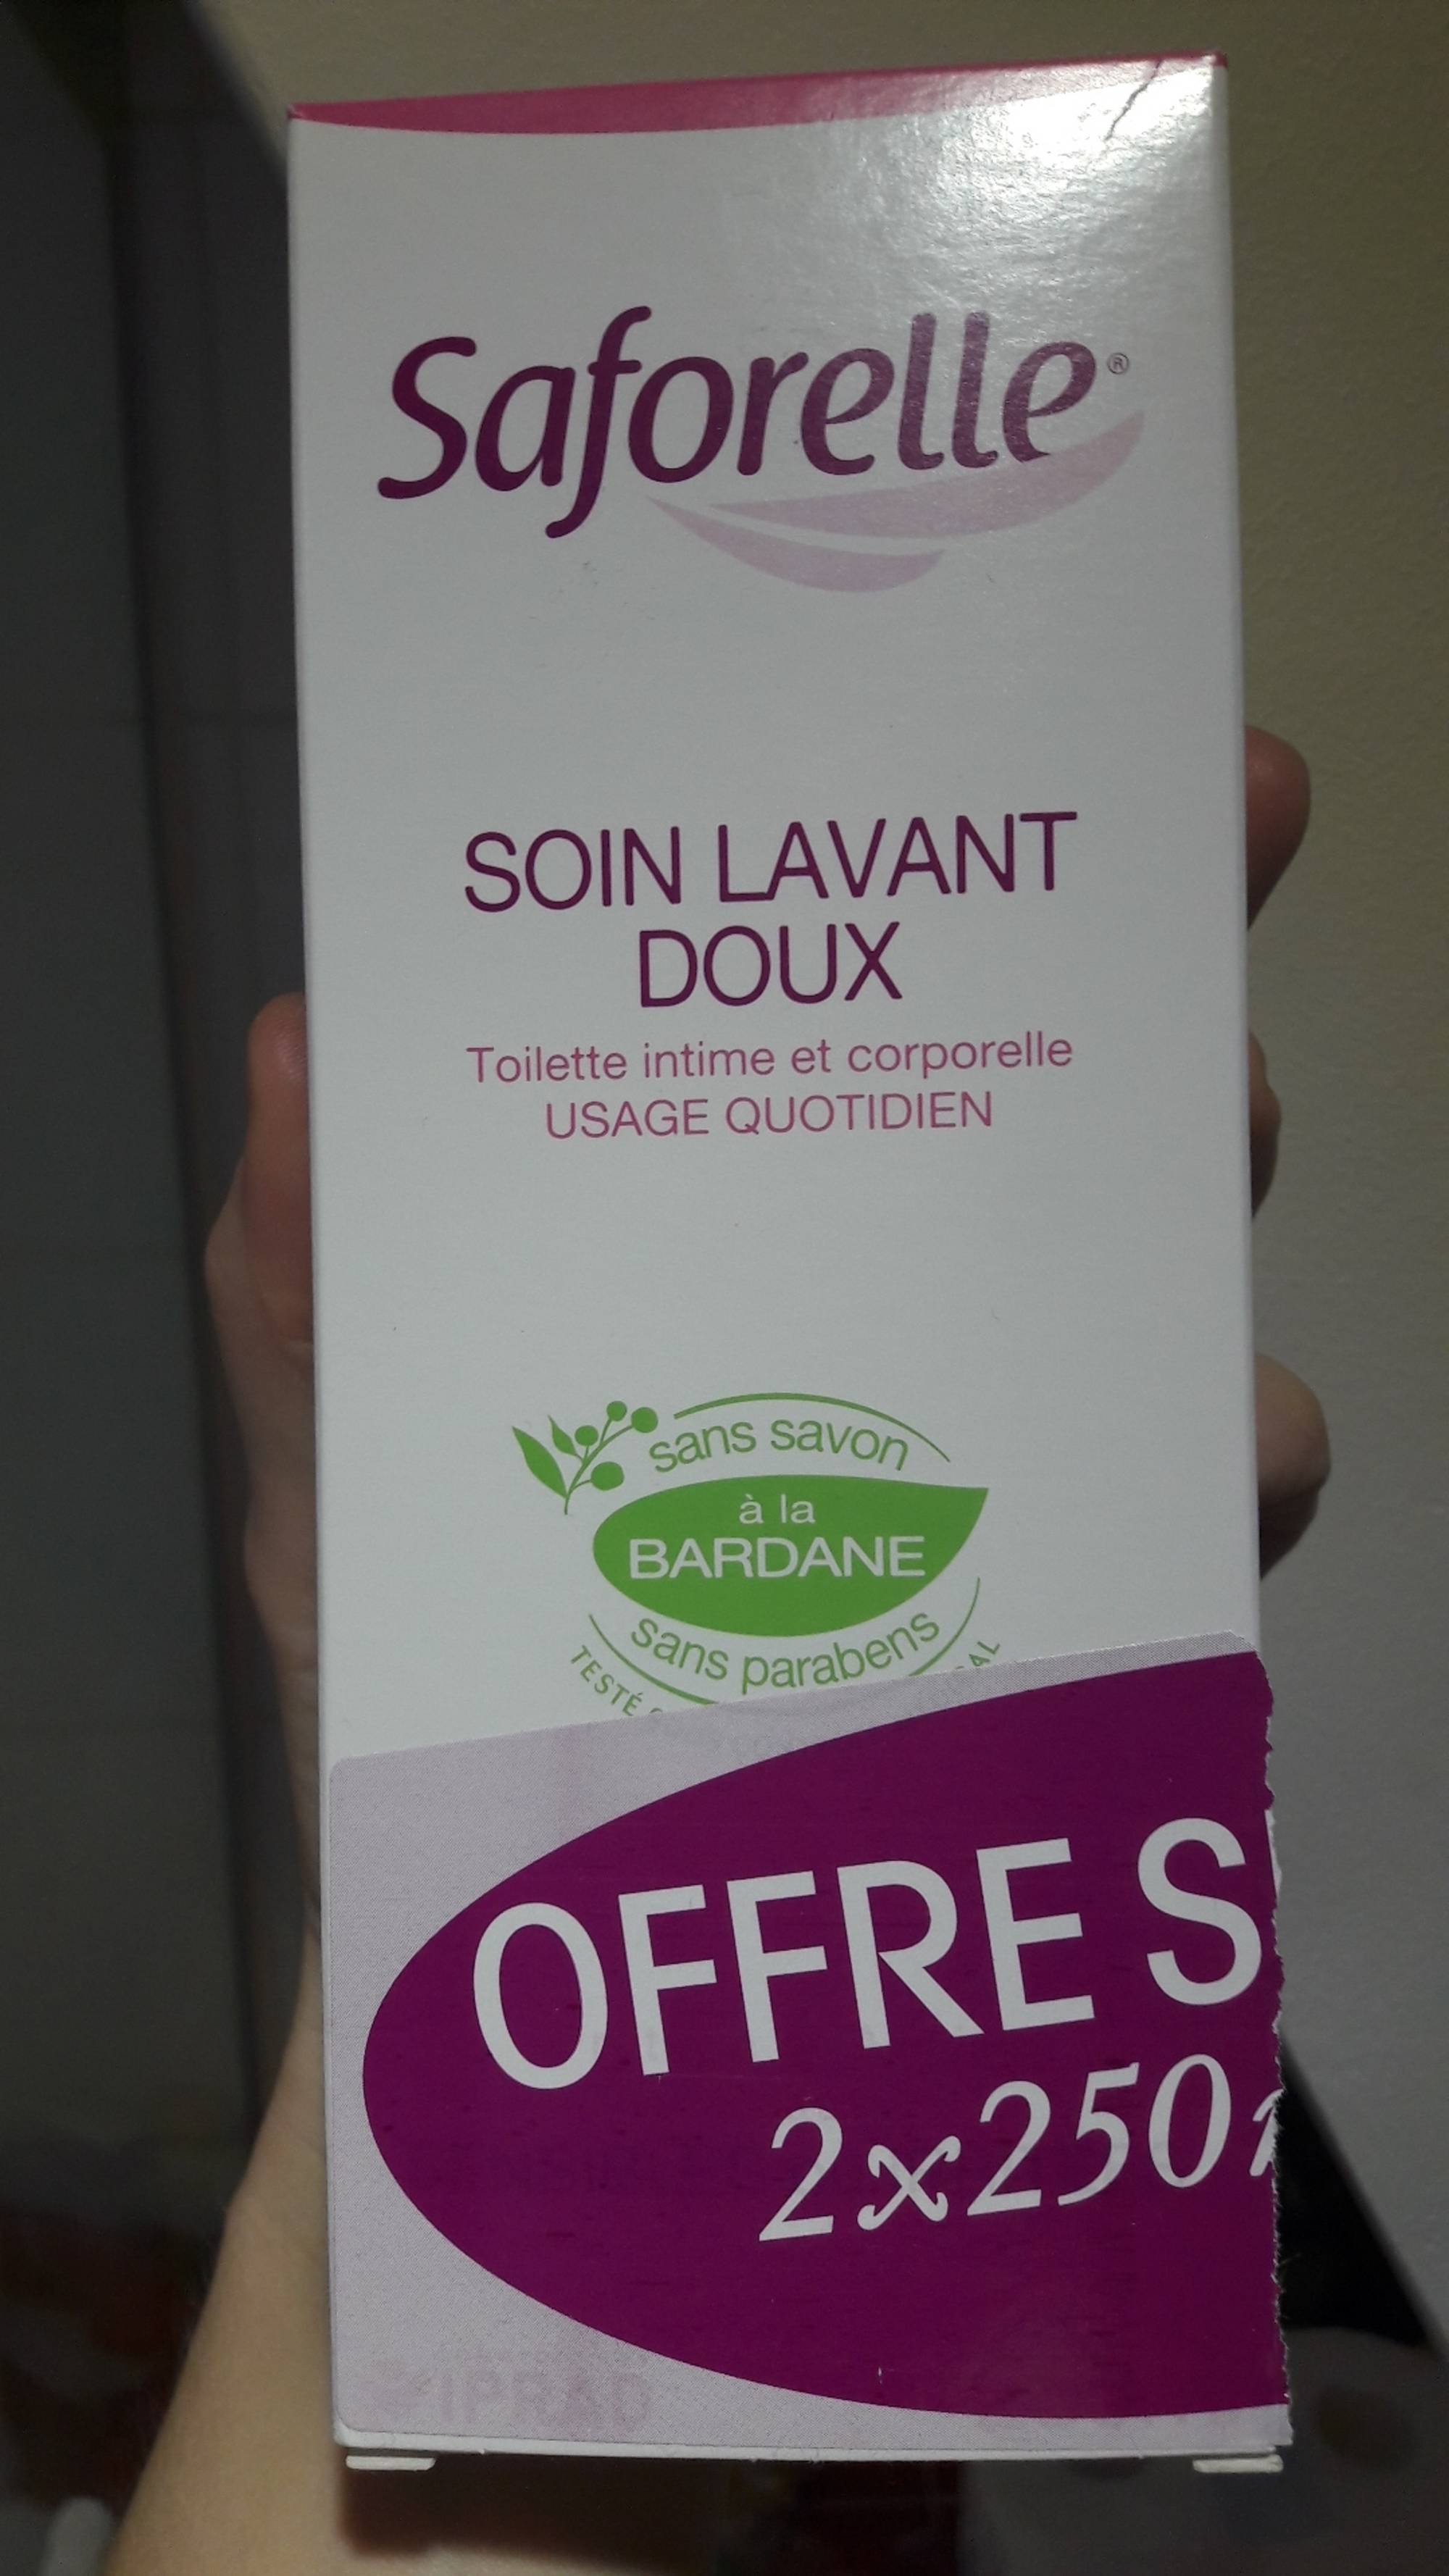 Soin Lavant Doux Toilette Intime et Corporelle 250 ml SAFORELLE | P